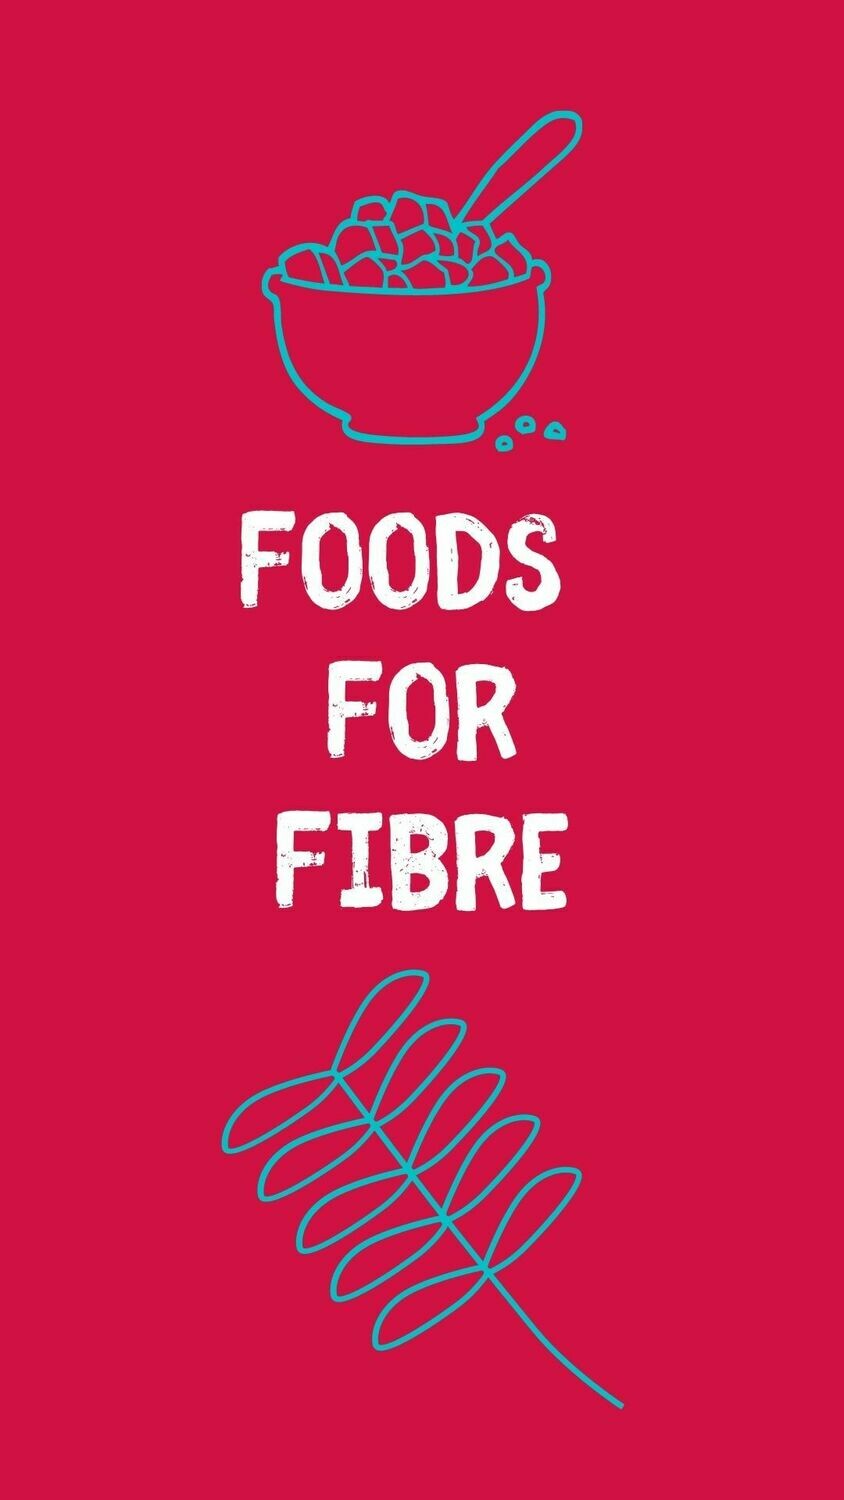 Foods for Fibre (Fiber) List